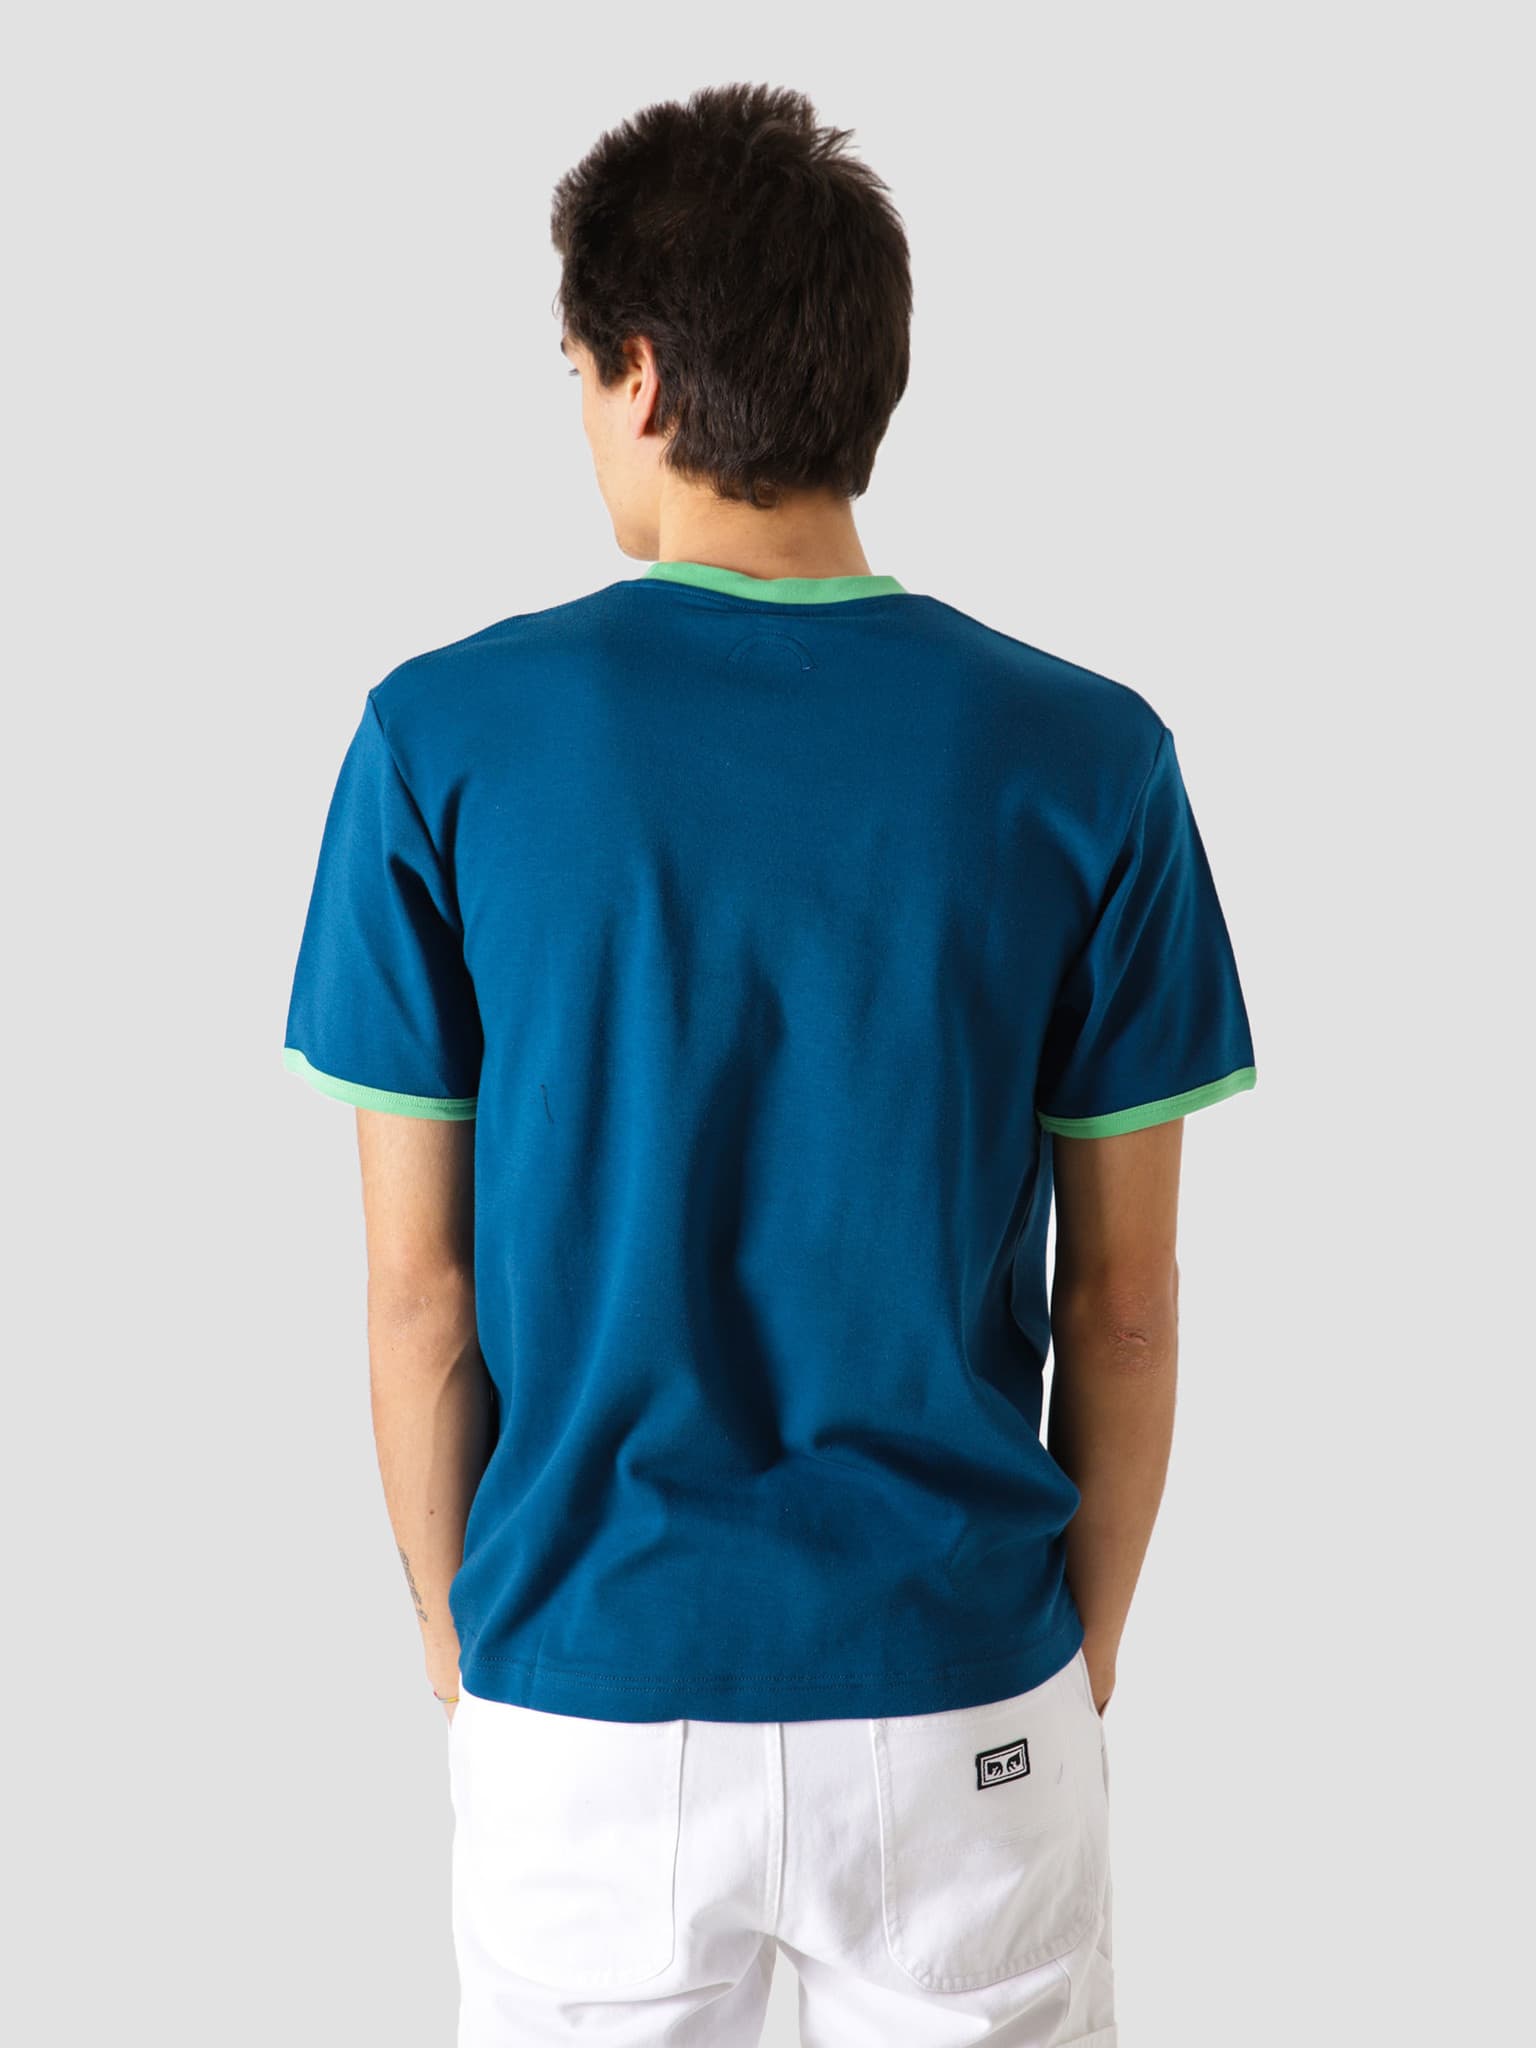 Workman T-Shirt Blue